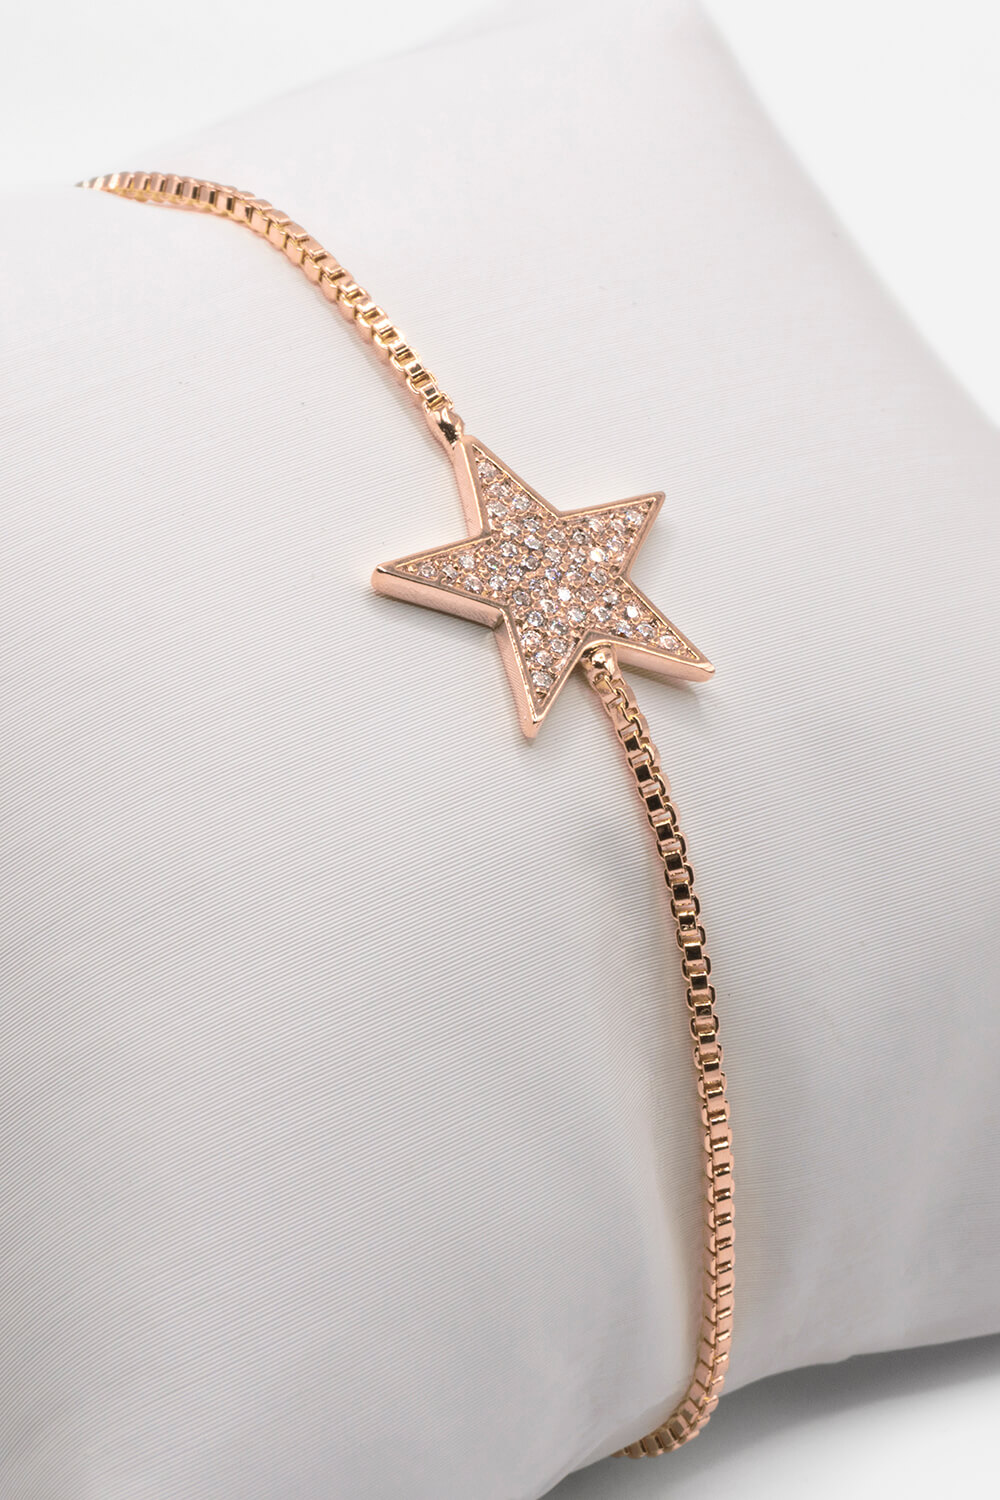 Adjustable Star Friendship Bracelet